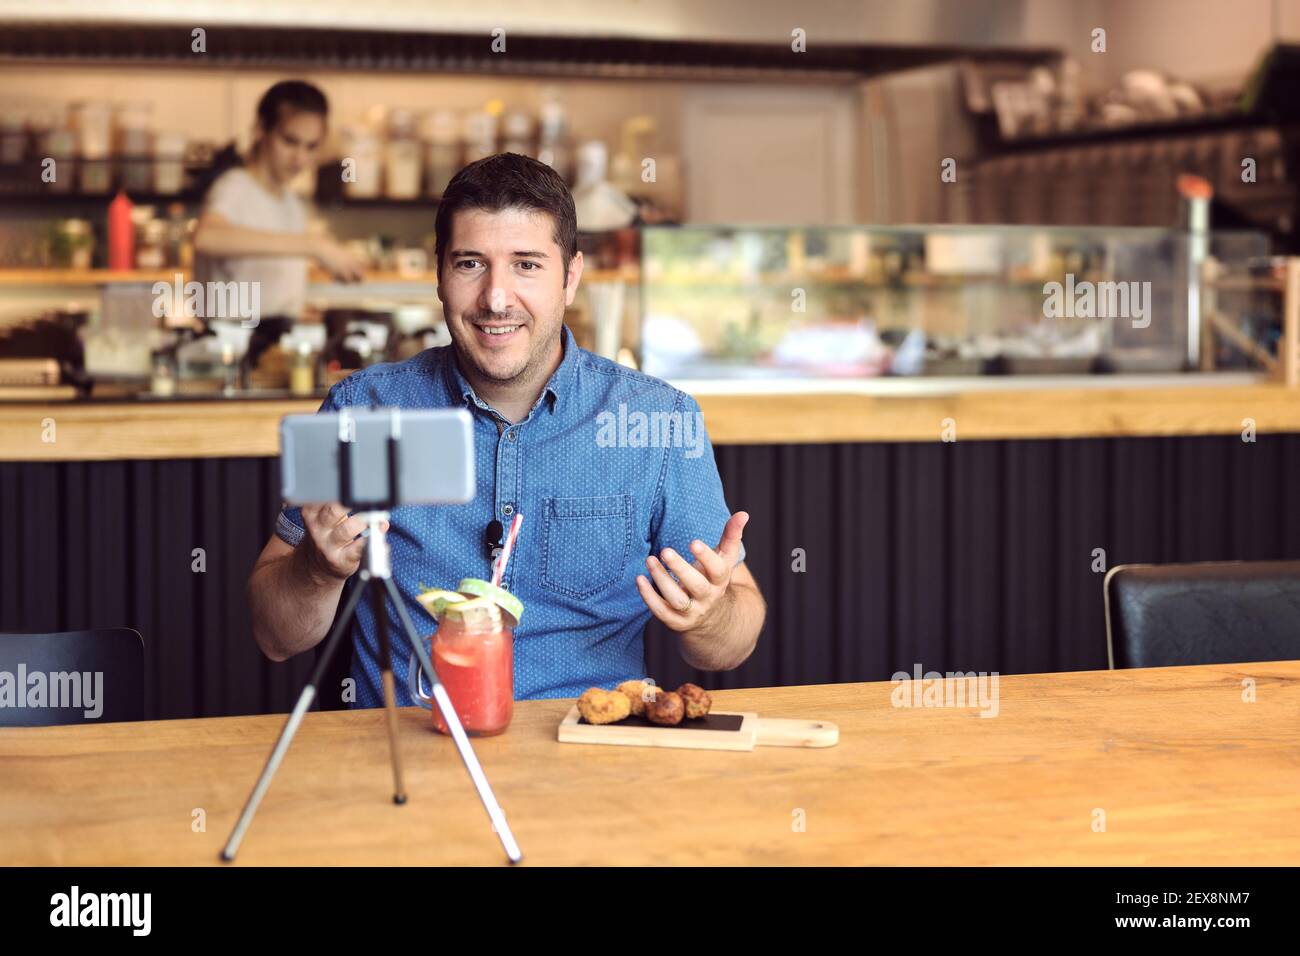 Social-Media-Influencer oder Food-Blogger erstellen digitale Marketing-Inhalte Durch Filmen von Videos im Restaurant für kleine Unternehmen Stockfoto